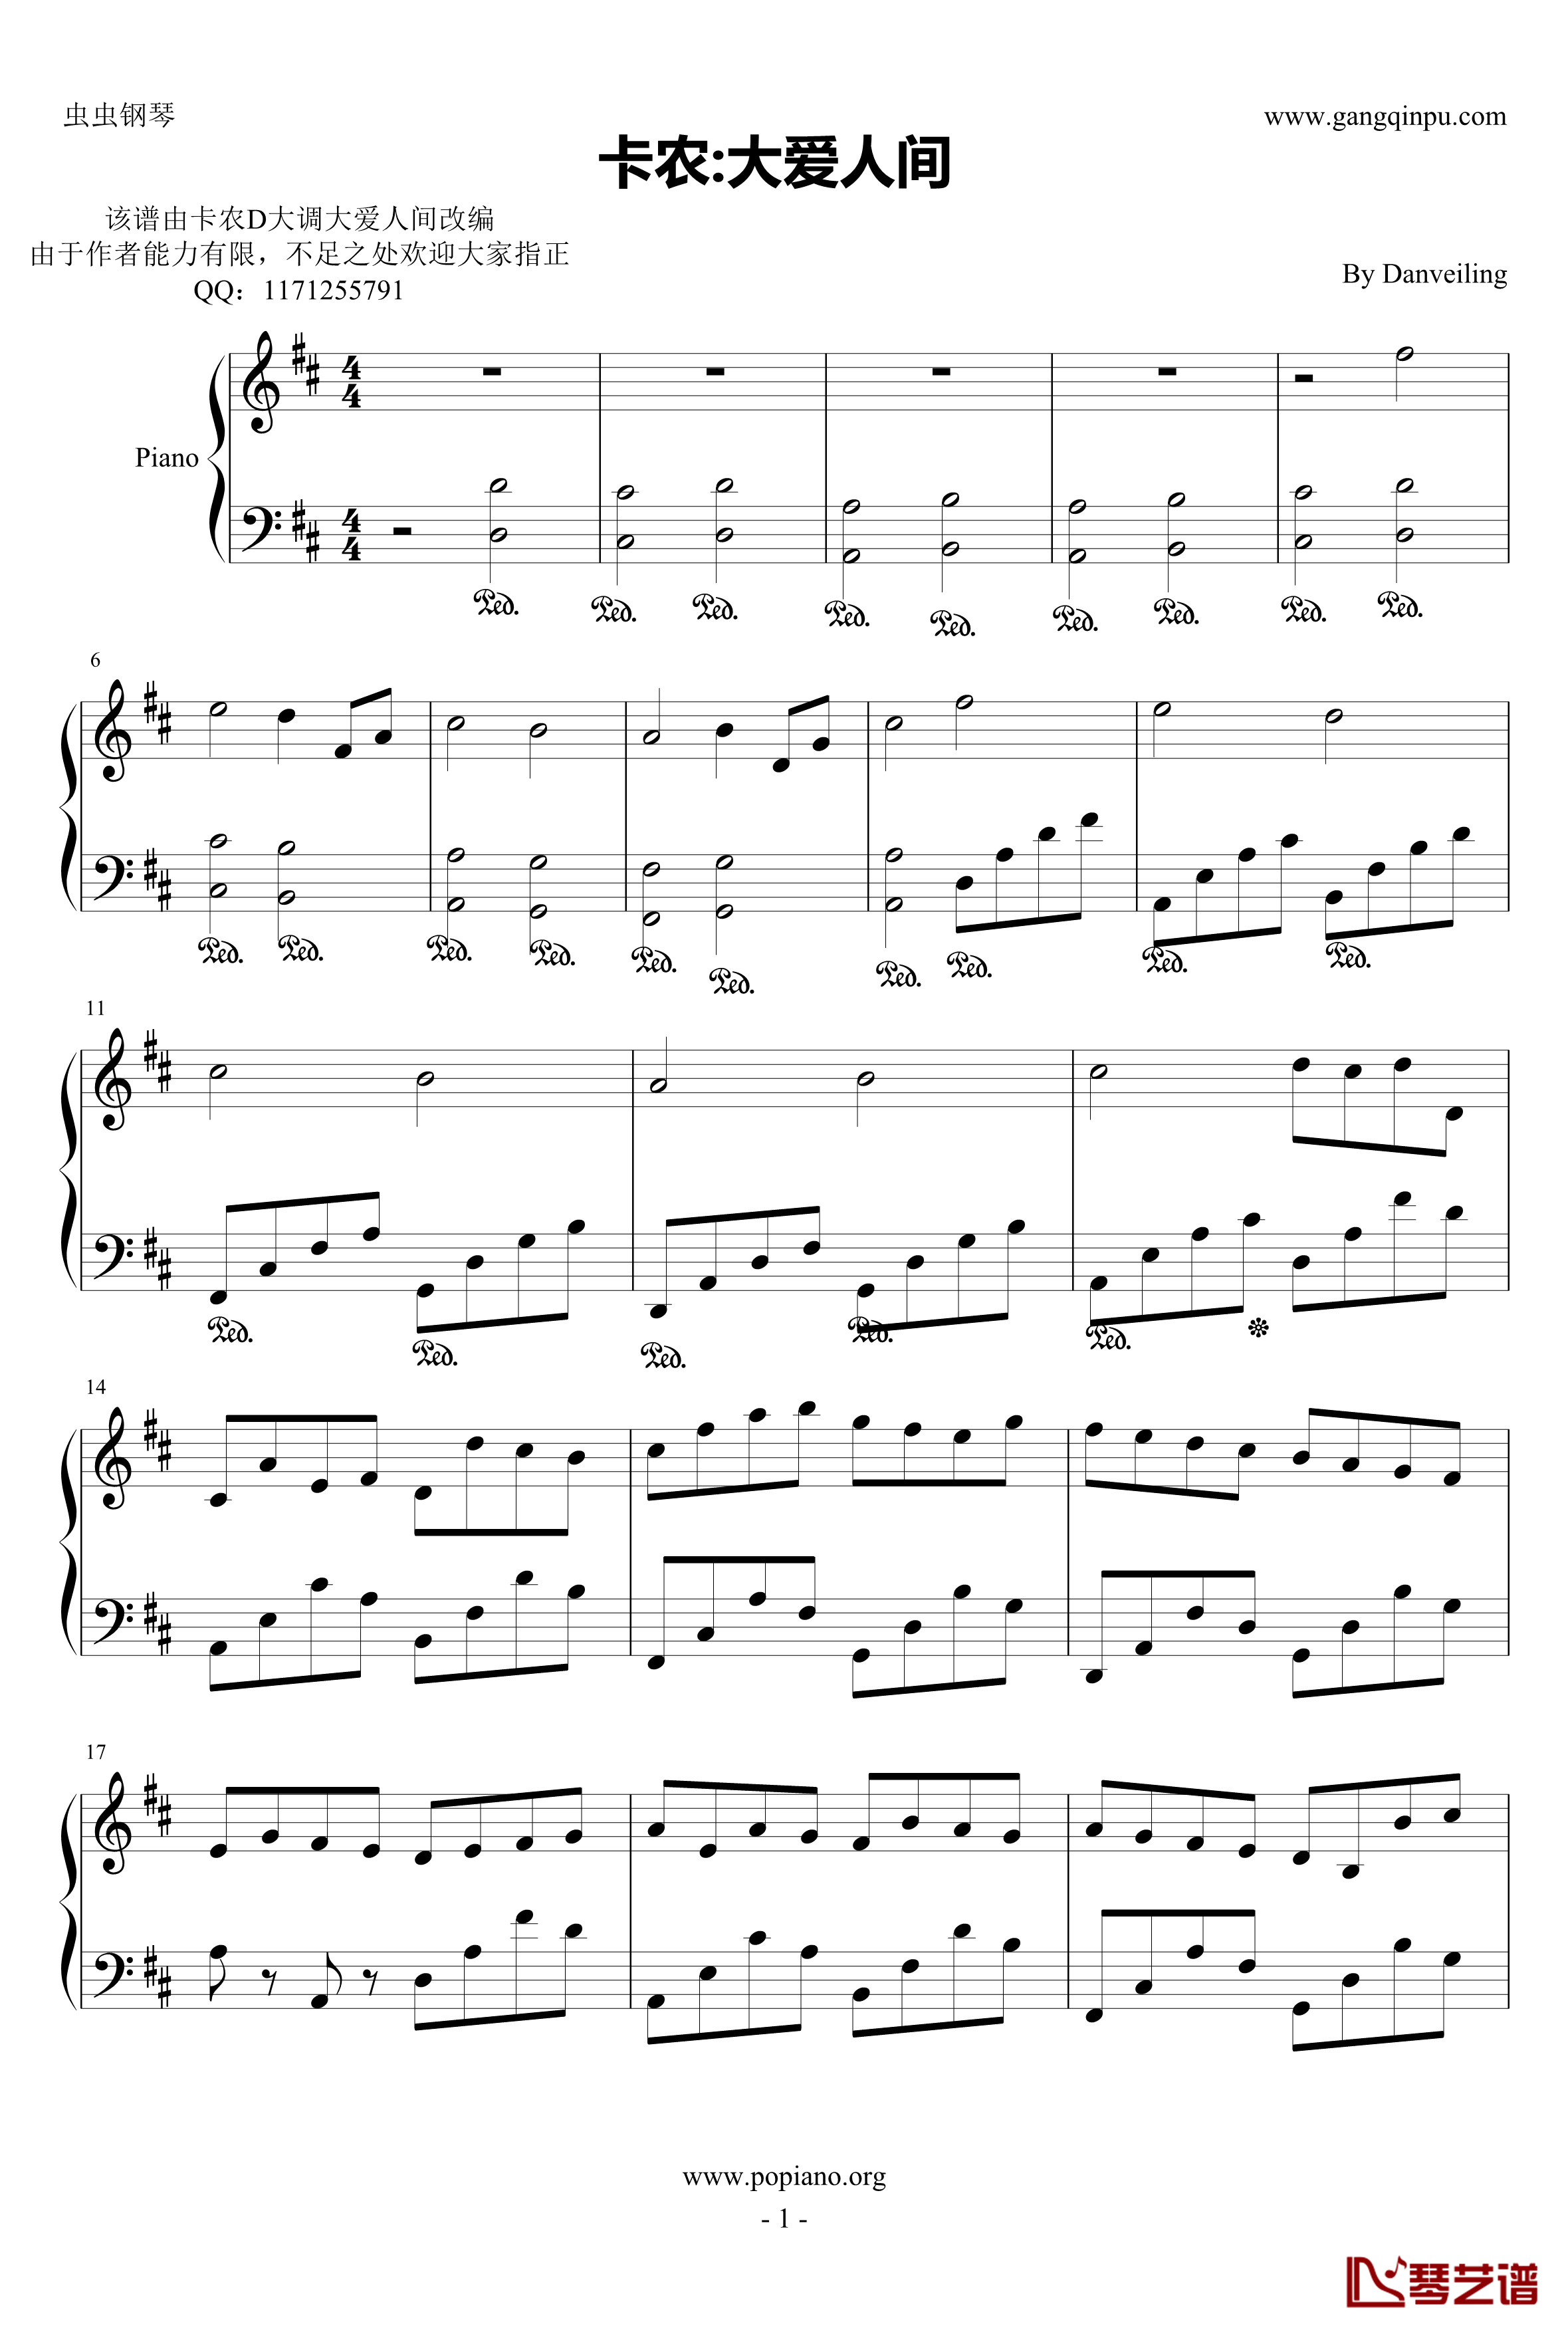 卡农：大爱人间钢琴谱-完整版-帕赫贝尔-Pachelbel1